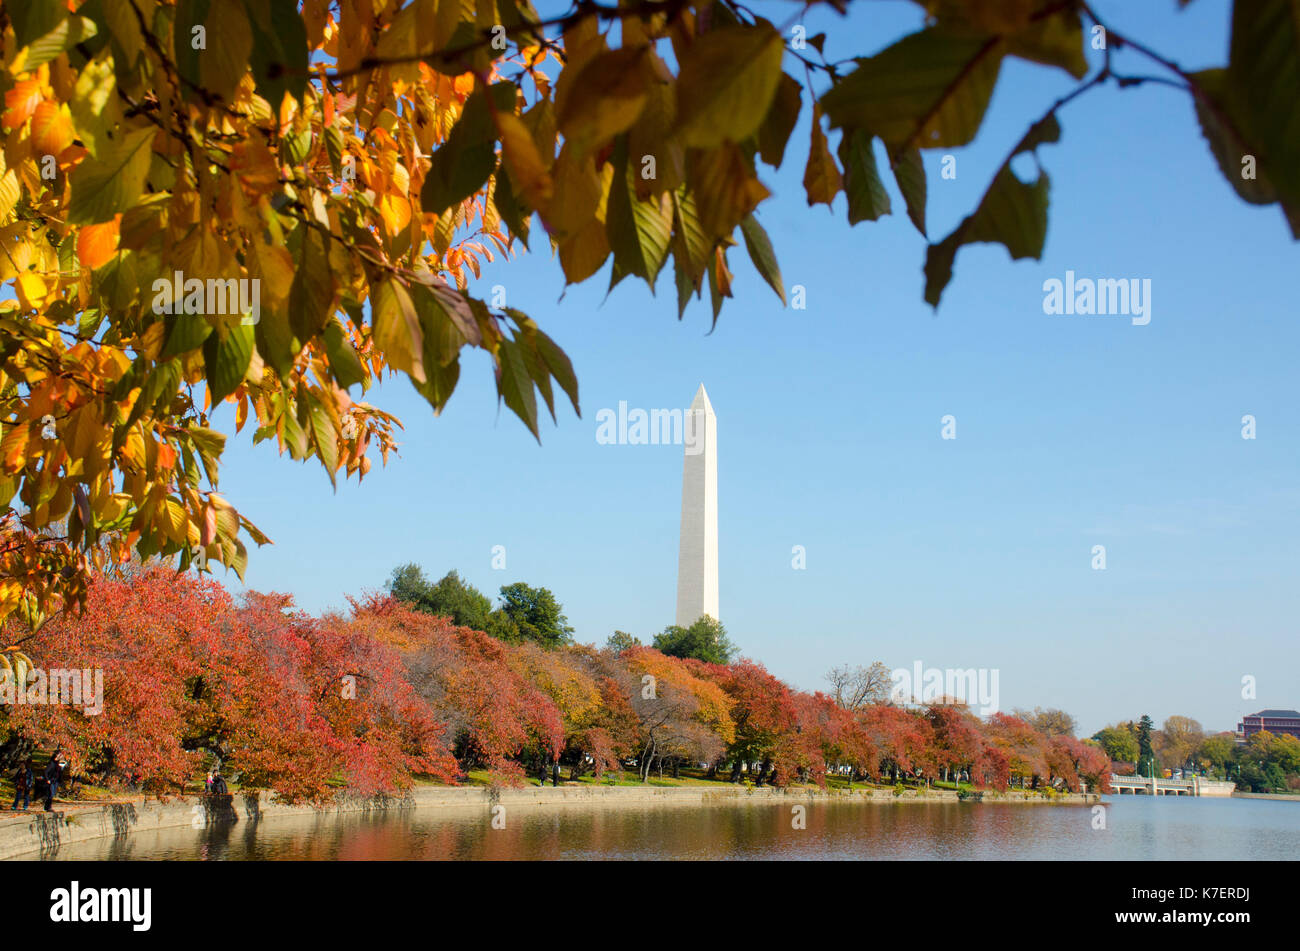 Famed ciliegi girare arancio brillante e di colore giallo durante l'autunno in Washington DC. Il Monumento a Washington è al centro. Foto Stock